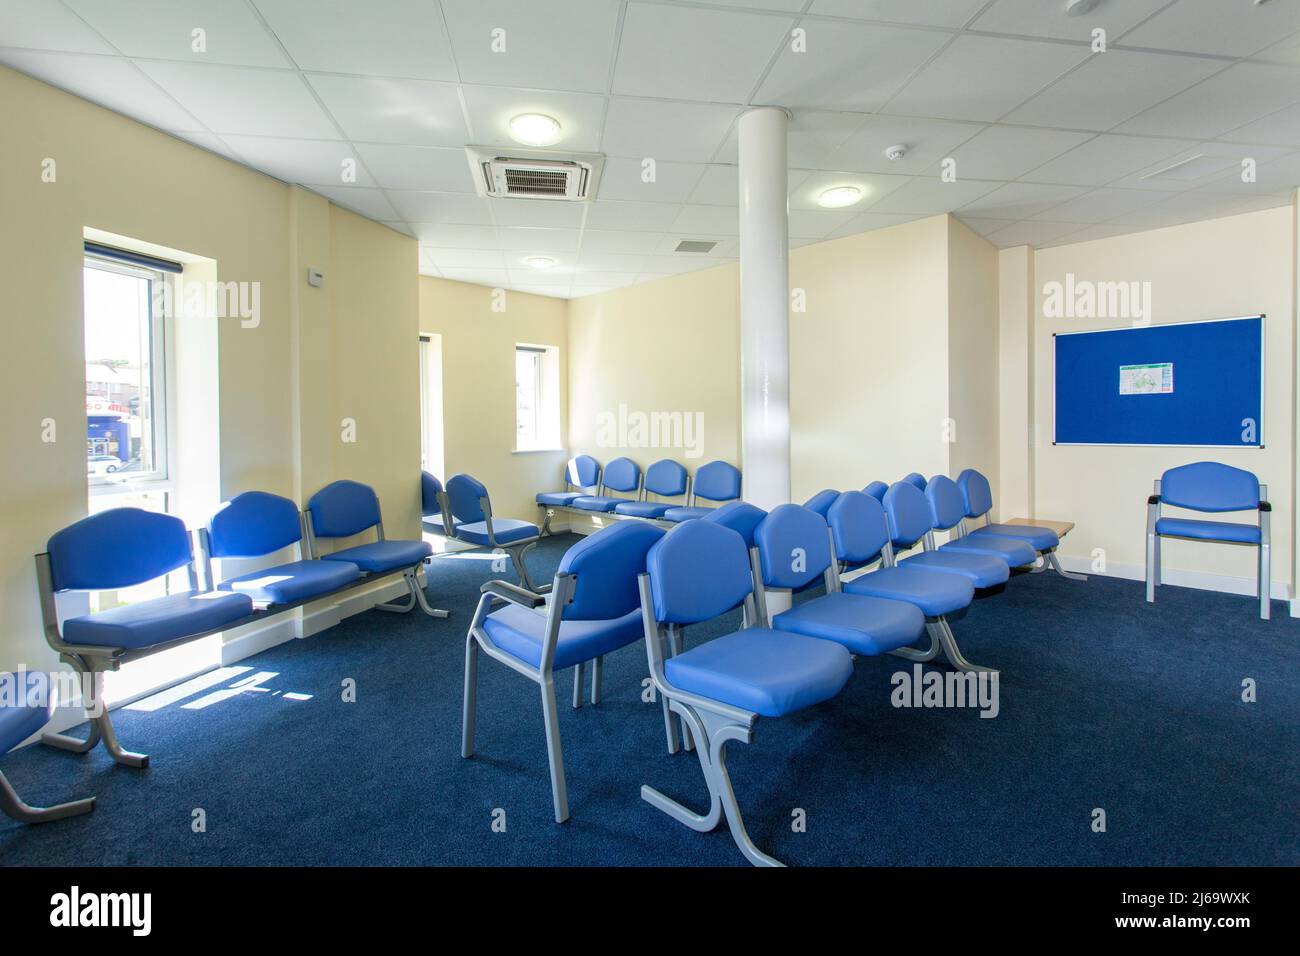 La sala de espera de los médicos estaba vacía, la sala de espera del NHS, la sala de espera estaba vacía. Foto de stock